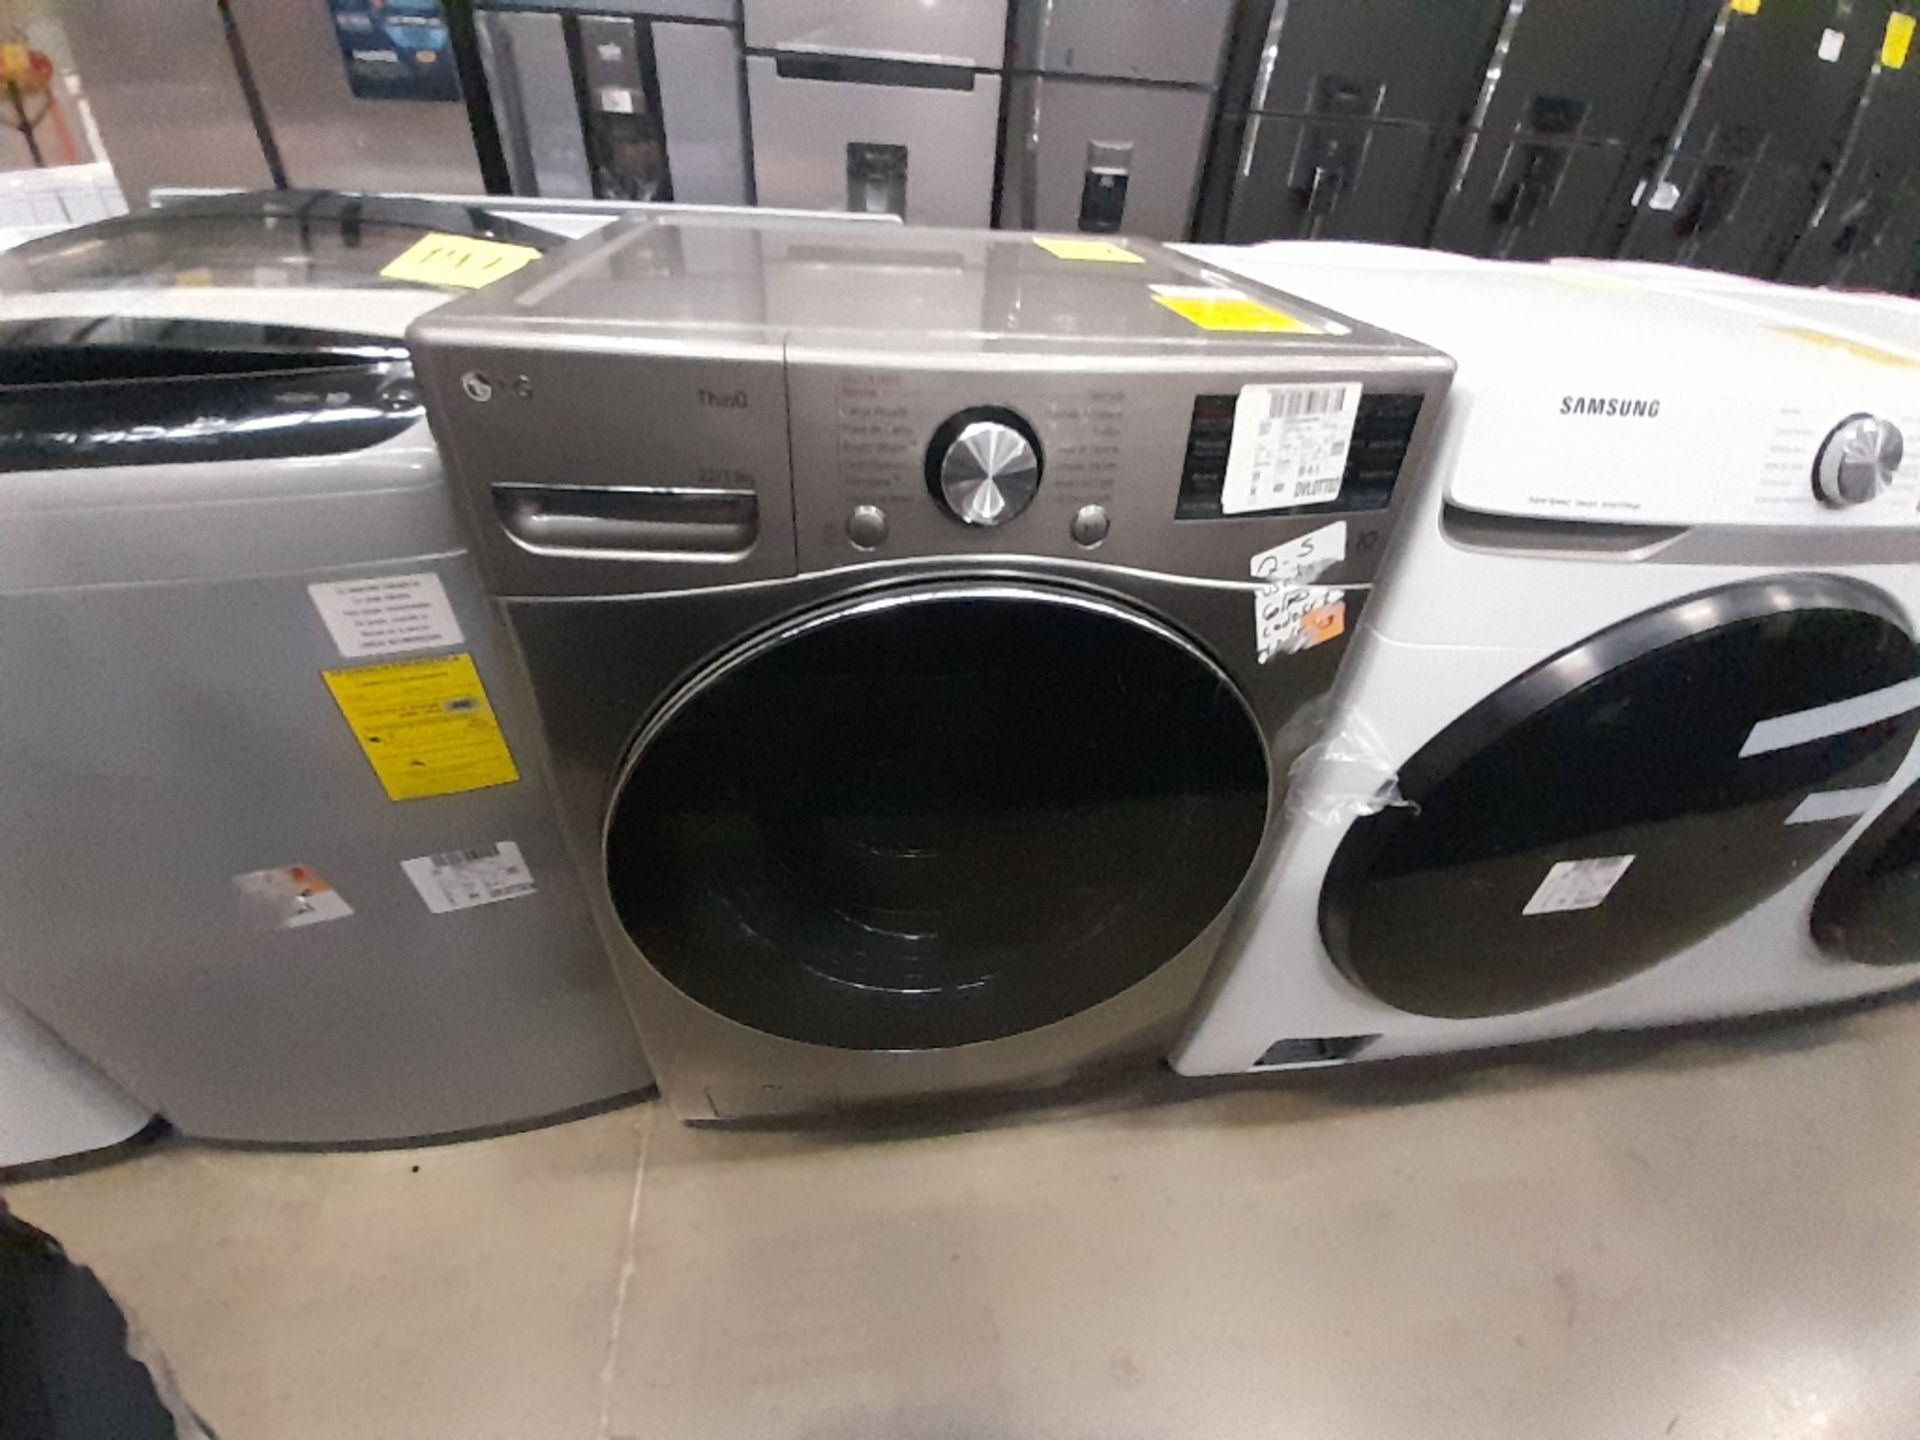 Lote de 1 lavadora y 1 Lavasecadora contiene: 1 lavadora de 18 KG, Marca LG, Modelo WT18DV6, Serie - Image 5 of 8